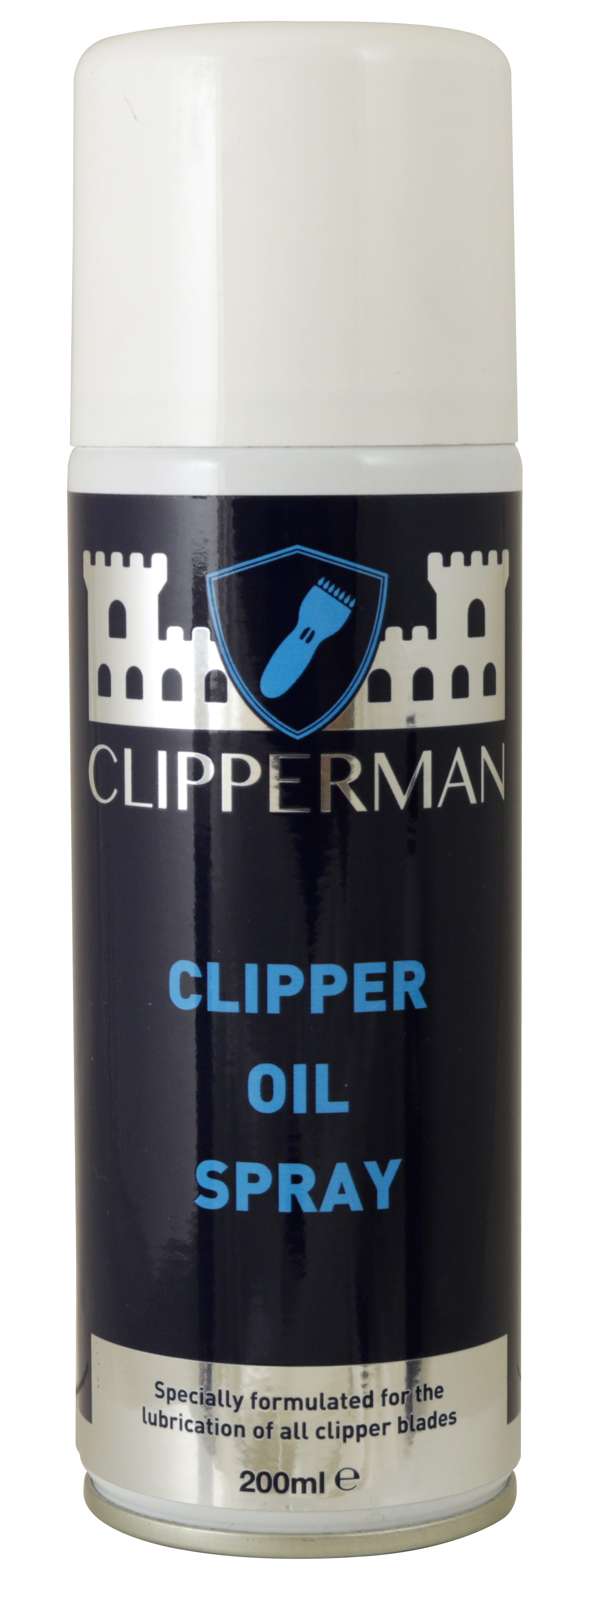 Liveryman Clipper Blade Wash Spray